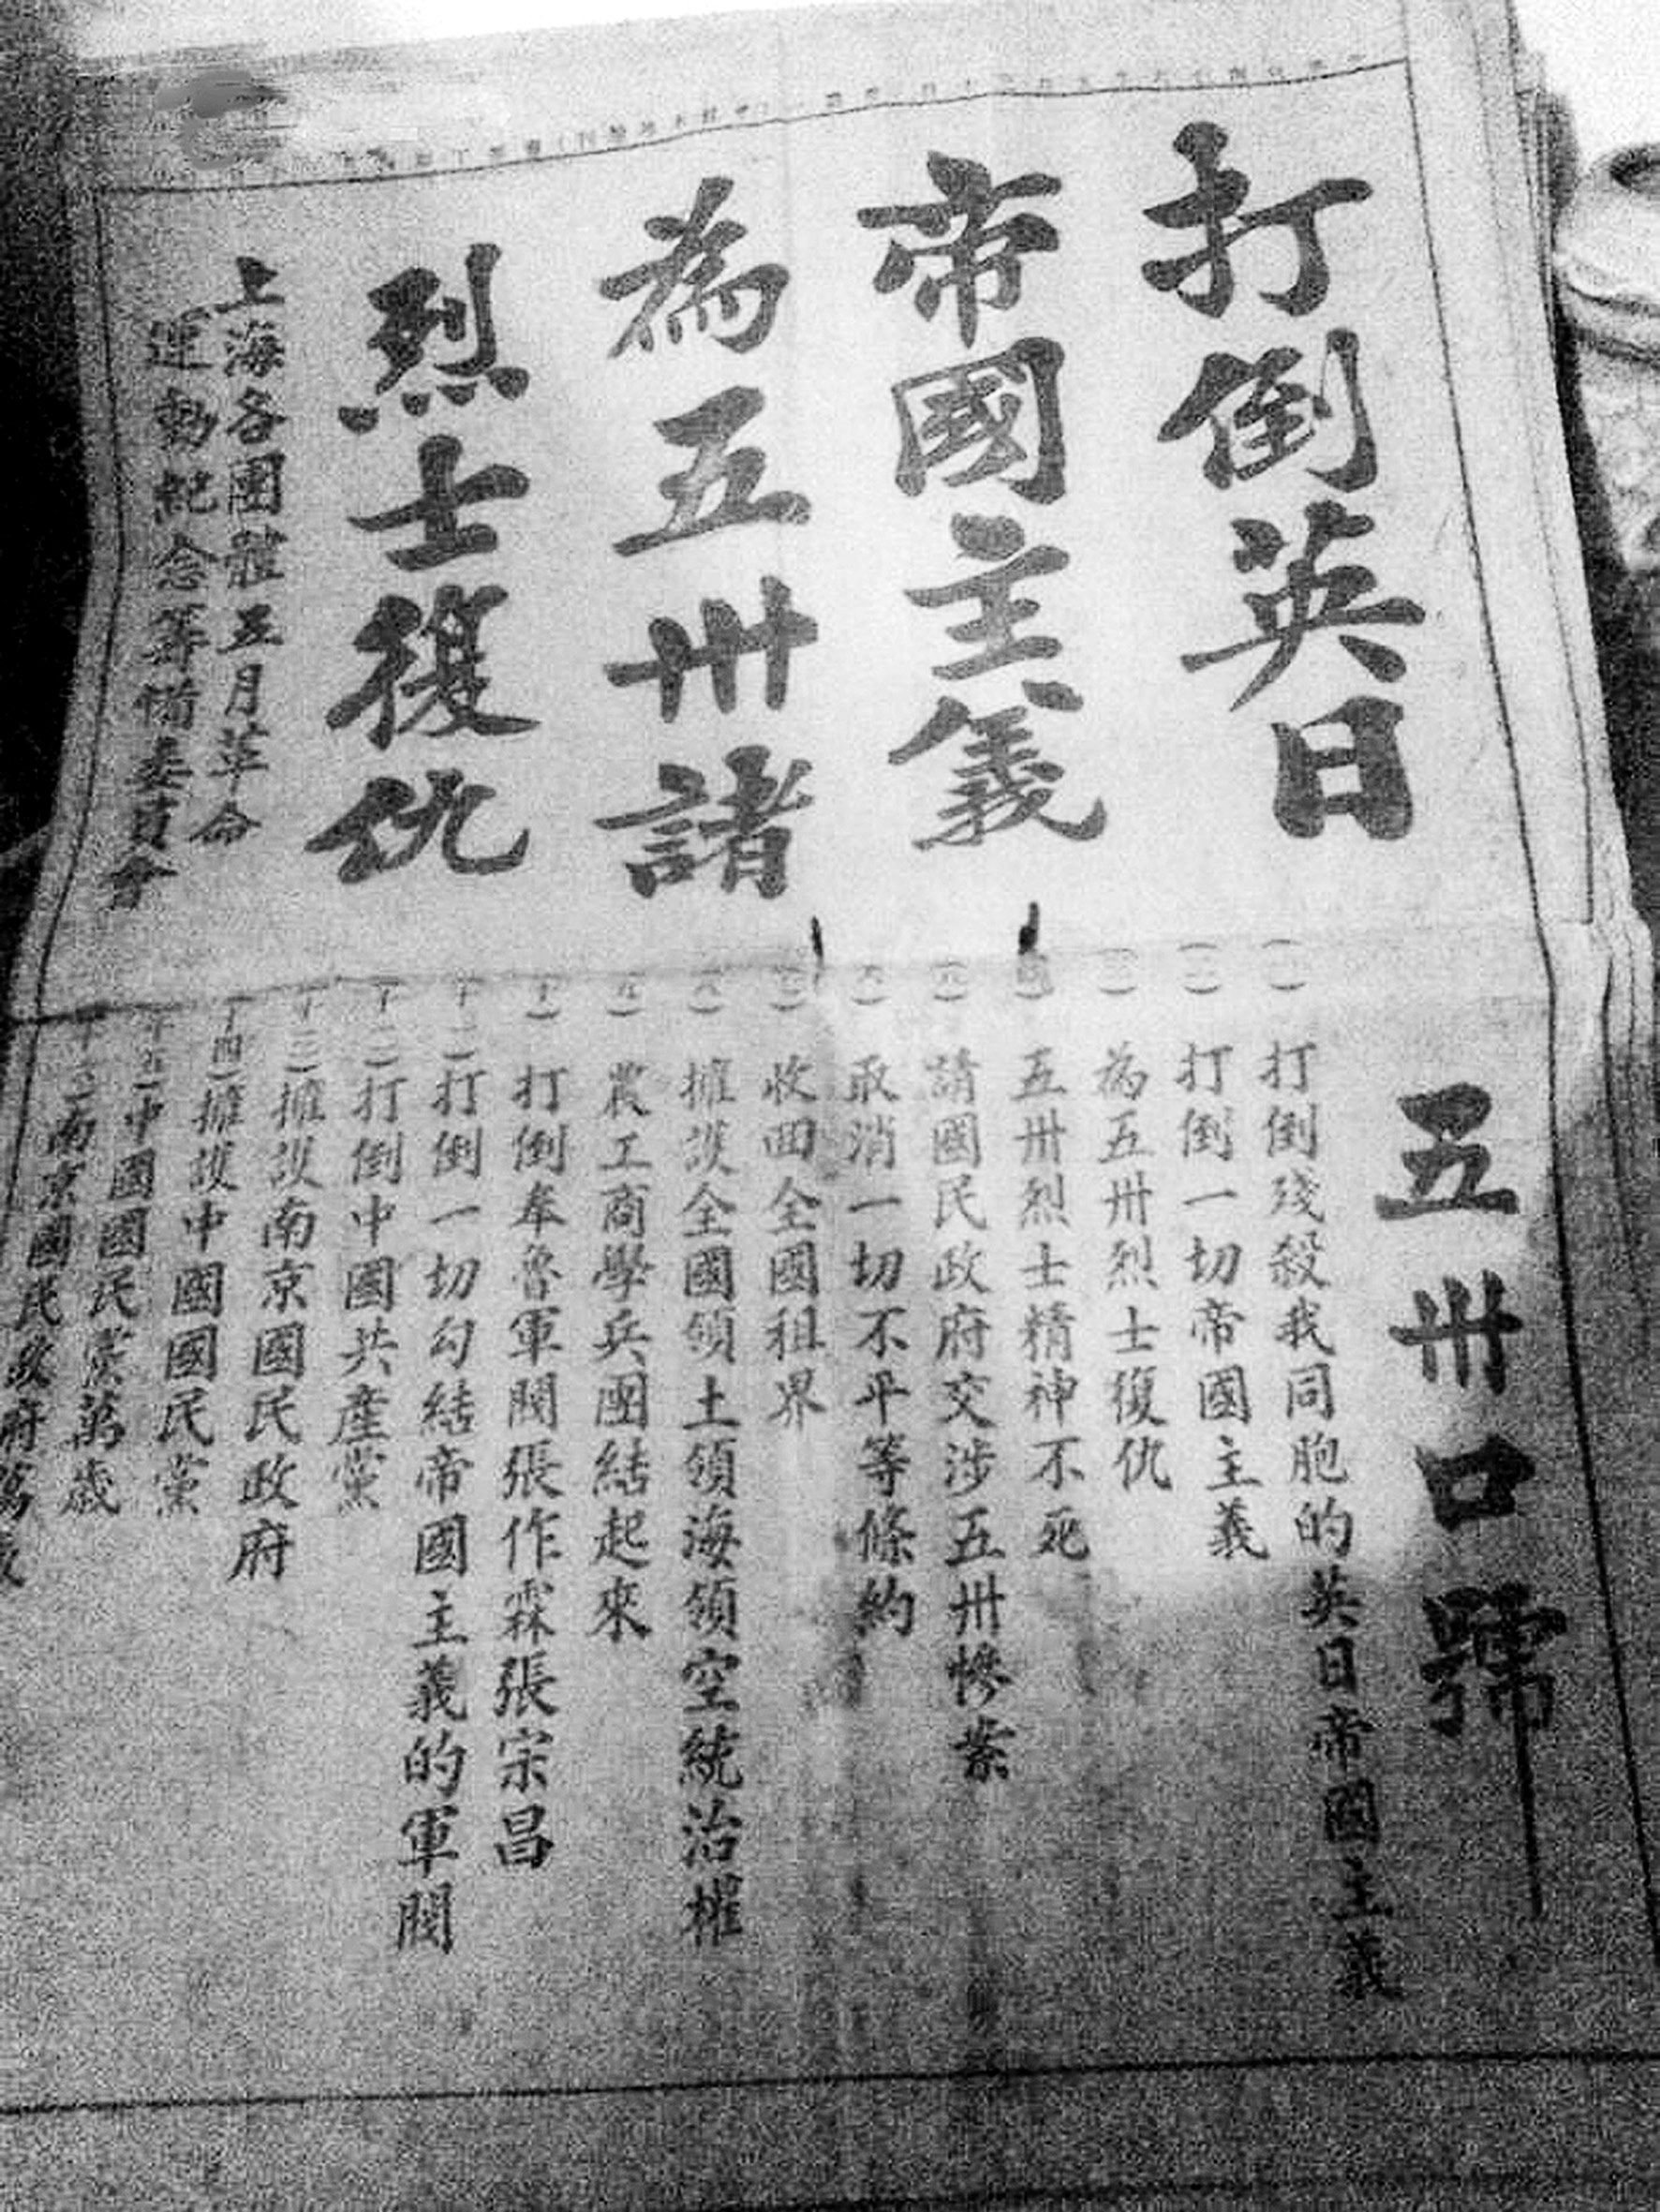 《申报》刊登五卅惨案消息 图片来自上海市地方志办公室官网